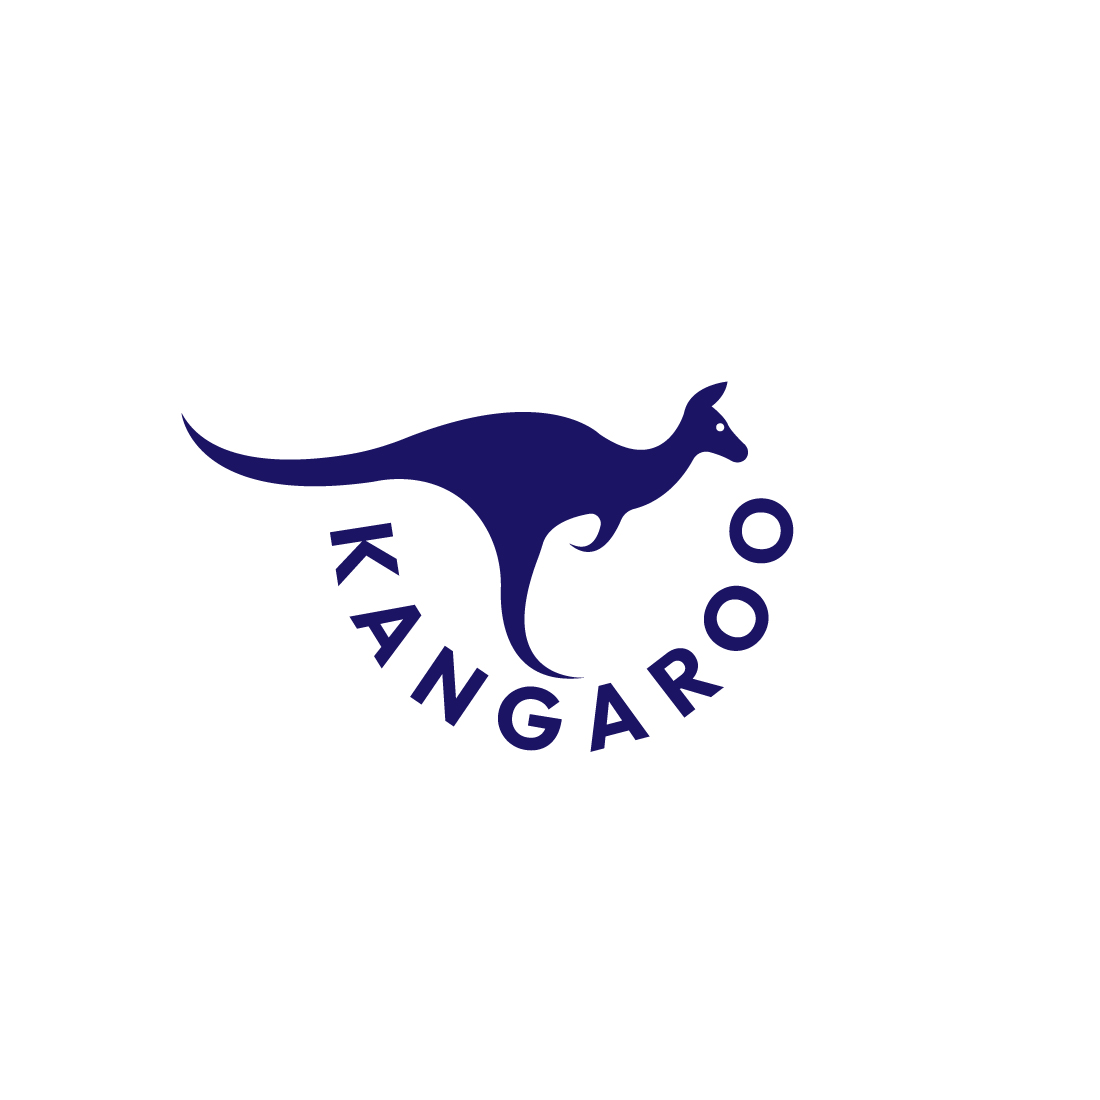 Kangaroo Animal Logo and Icon cover image.